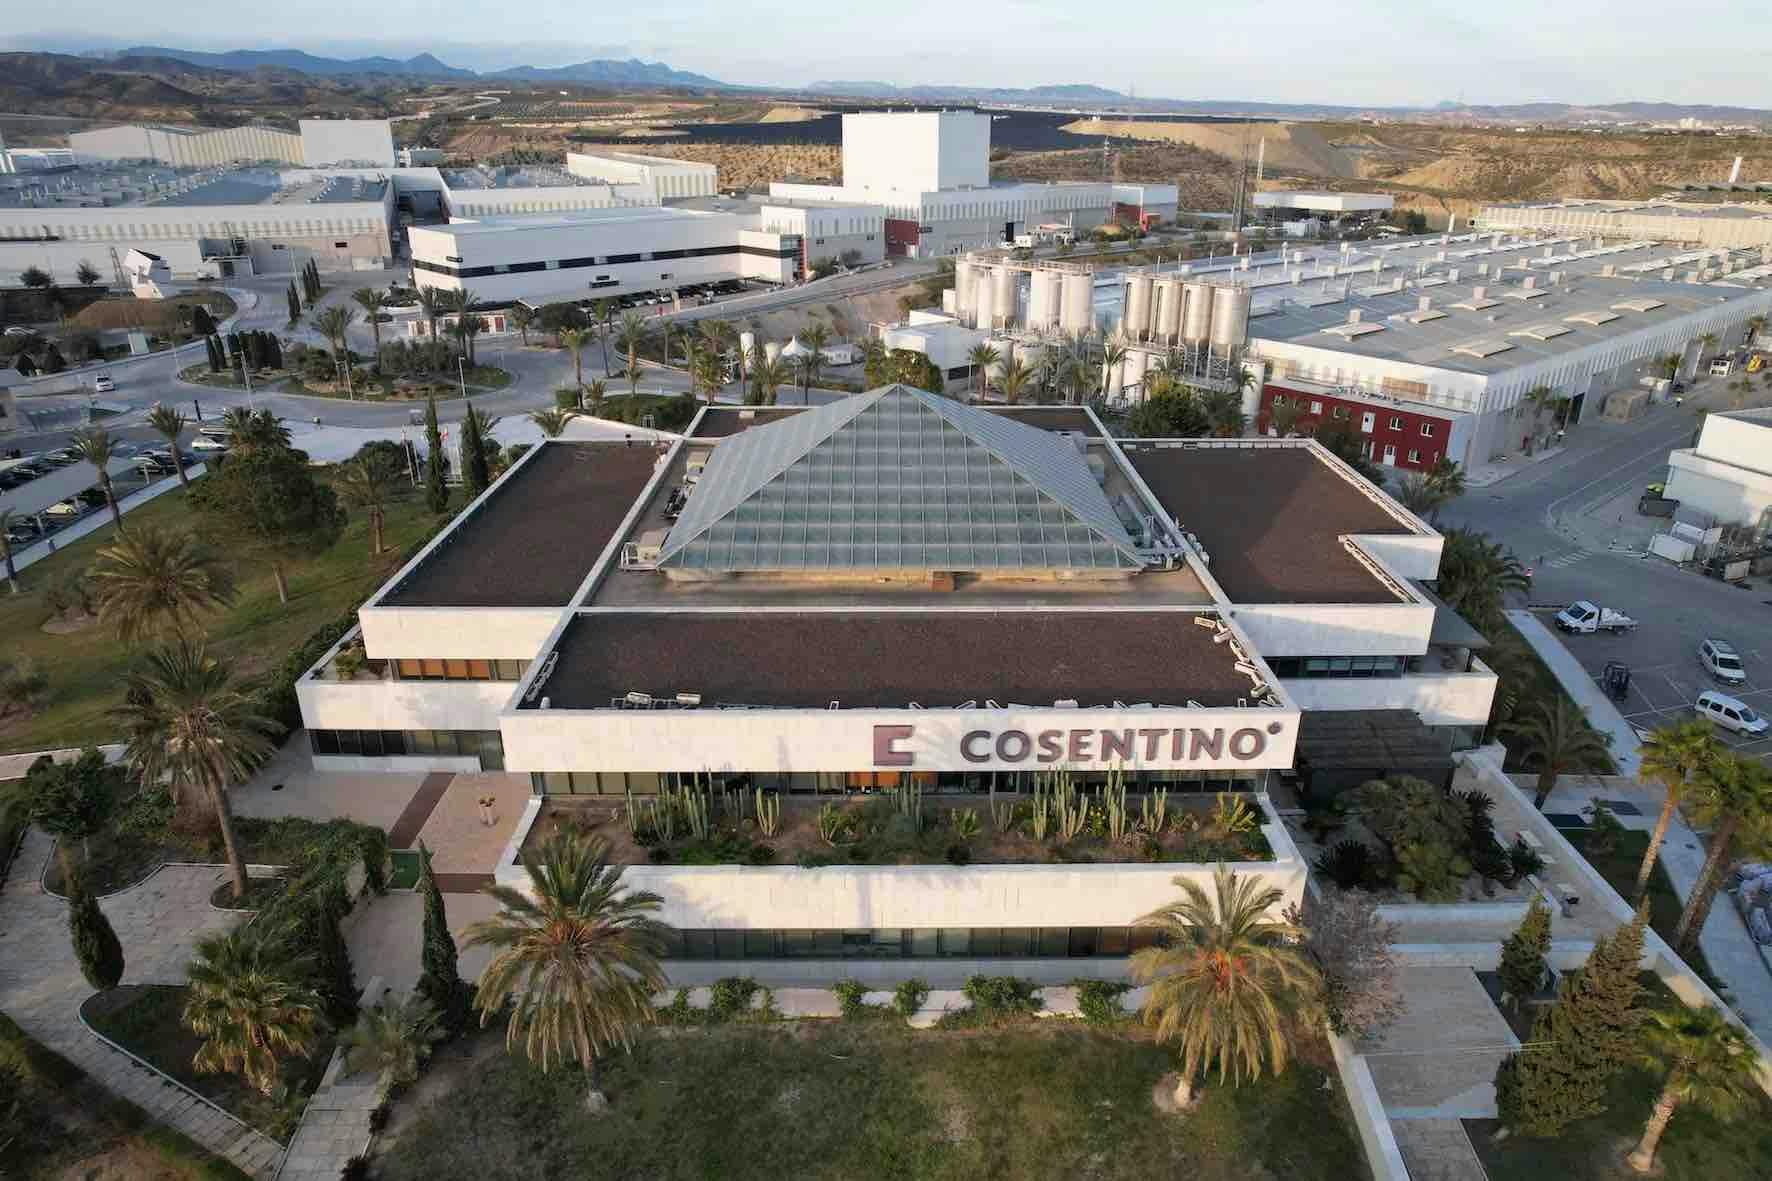 Image 89 of Parque Industrial Cosentino vista aerea oficinas d 1.jpg?auto=format%2Ccompress&ixlib=php 3.3 in Inspiration - Cosentino